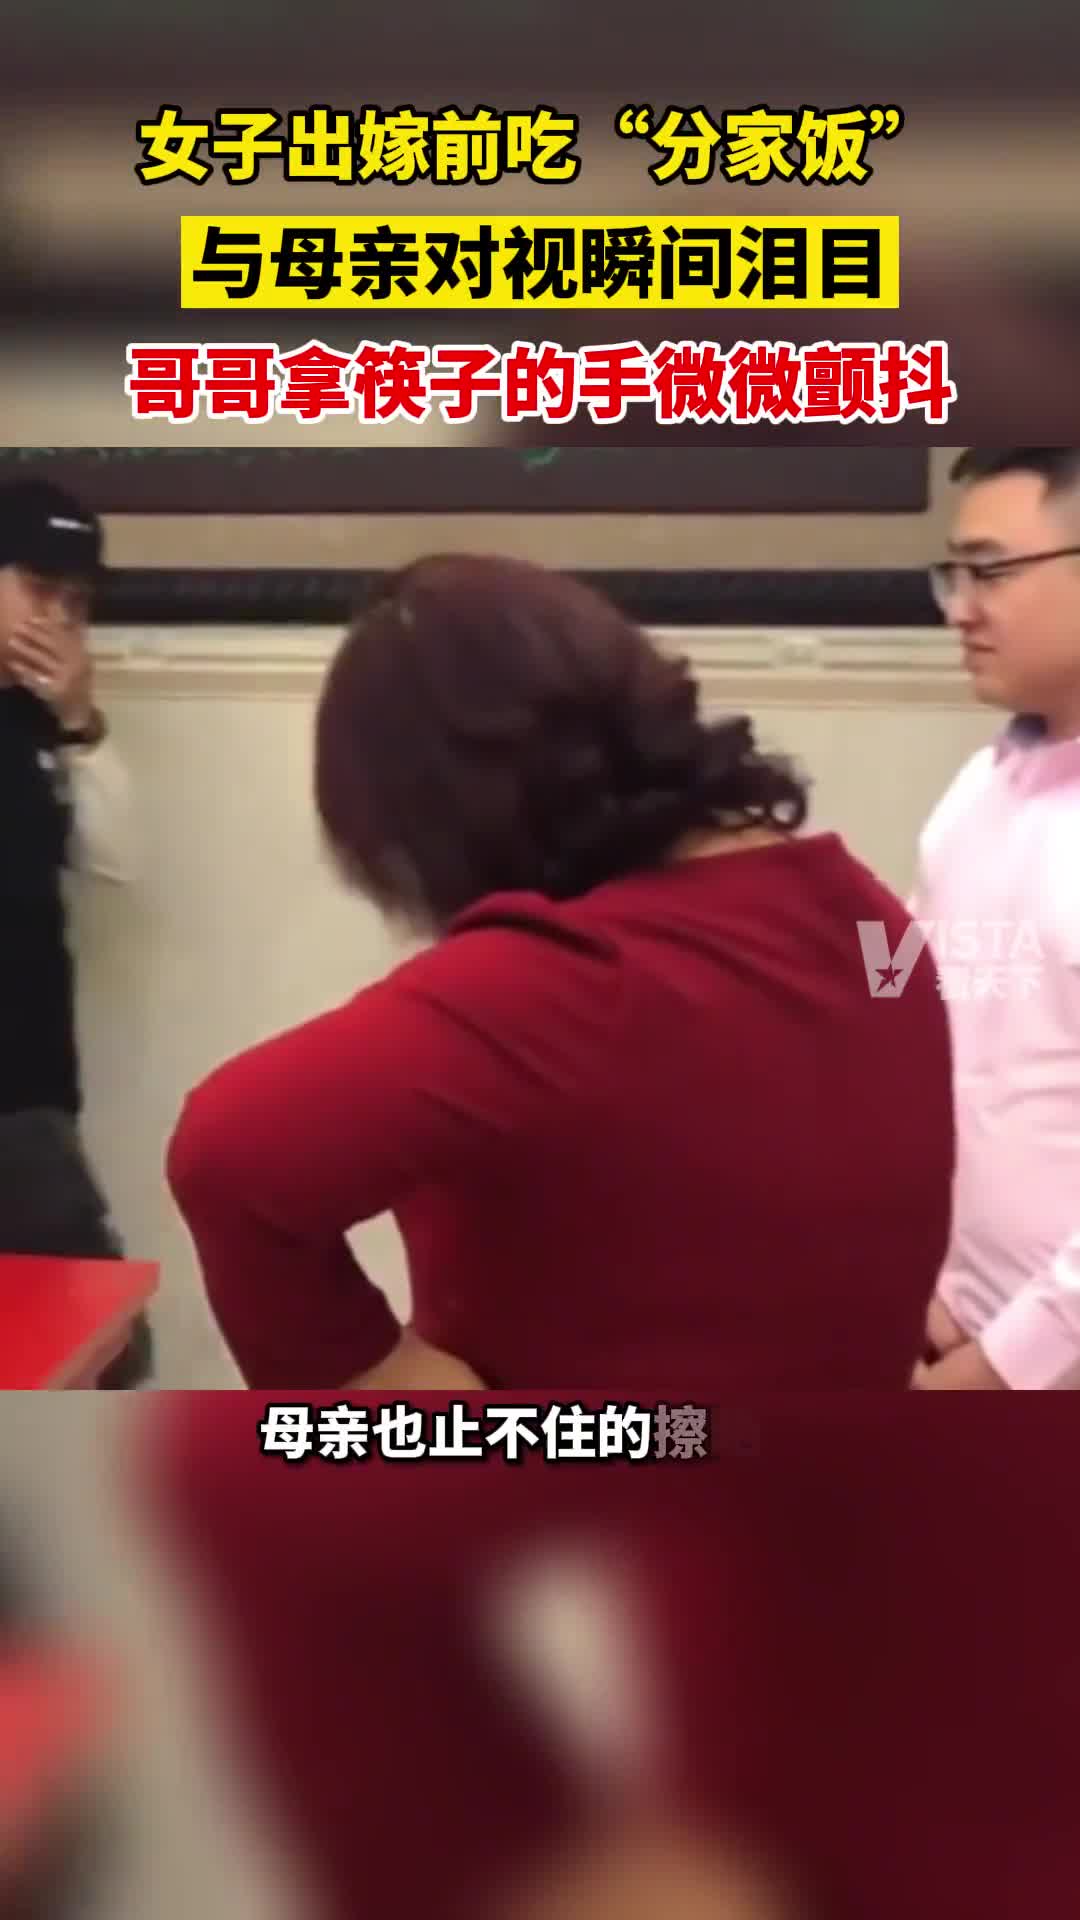 店老板见女生被打见义勇为遭围殴 妻子发声_凤凰网视频_凤凰网